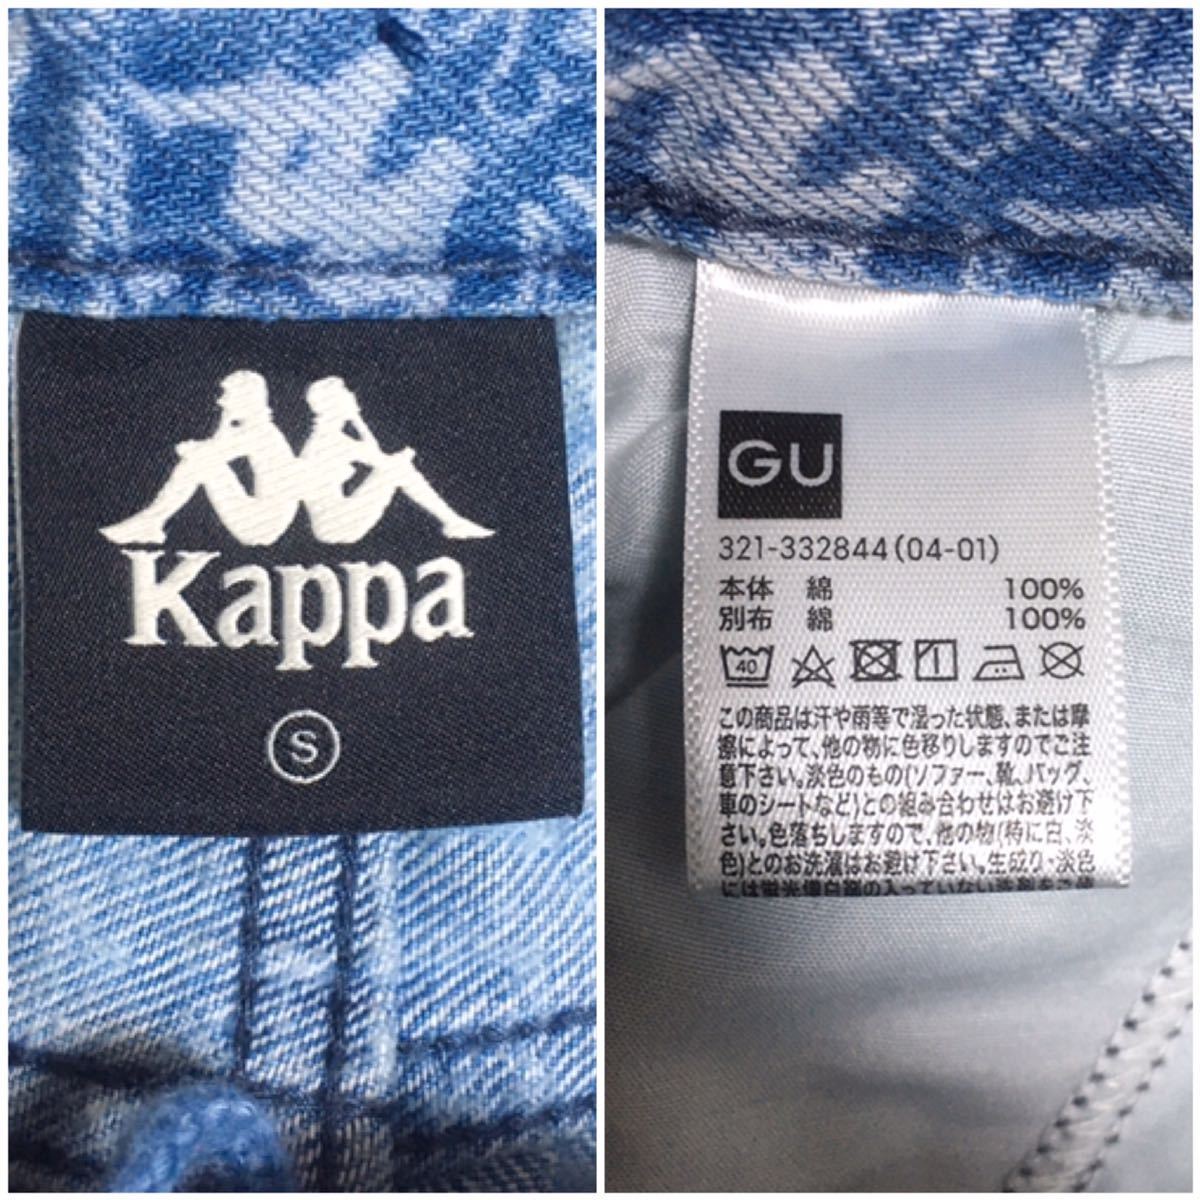 KAPPA GU カッパ ジーユー コラボ 総柄 ワイドデニム パンツ ロールアップ ロゴ柄 サイズ S_画像10